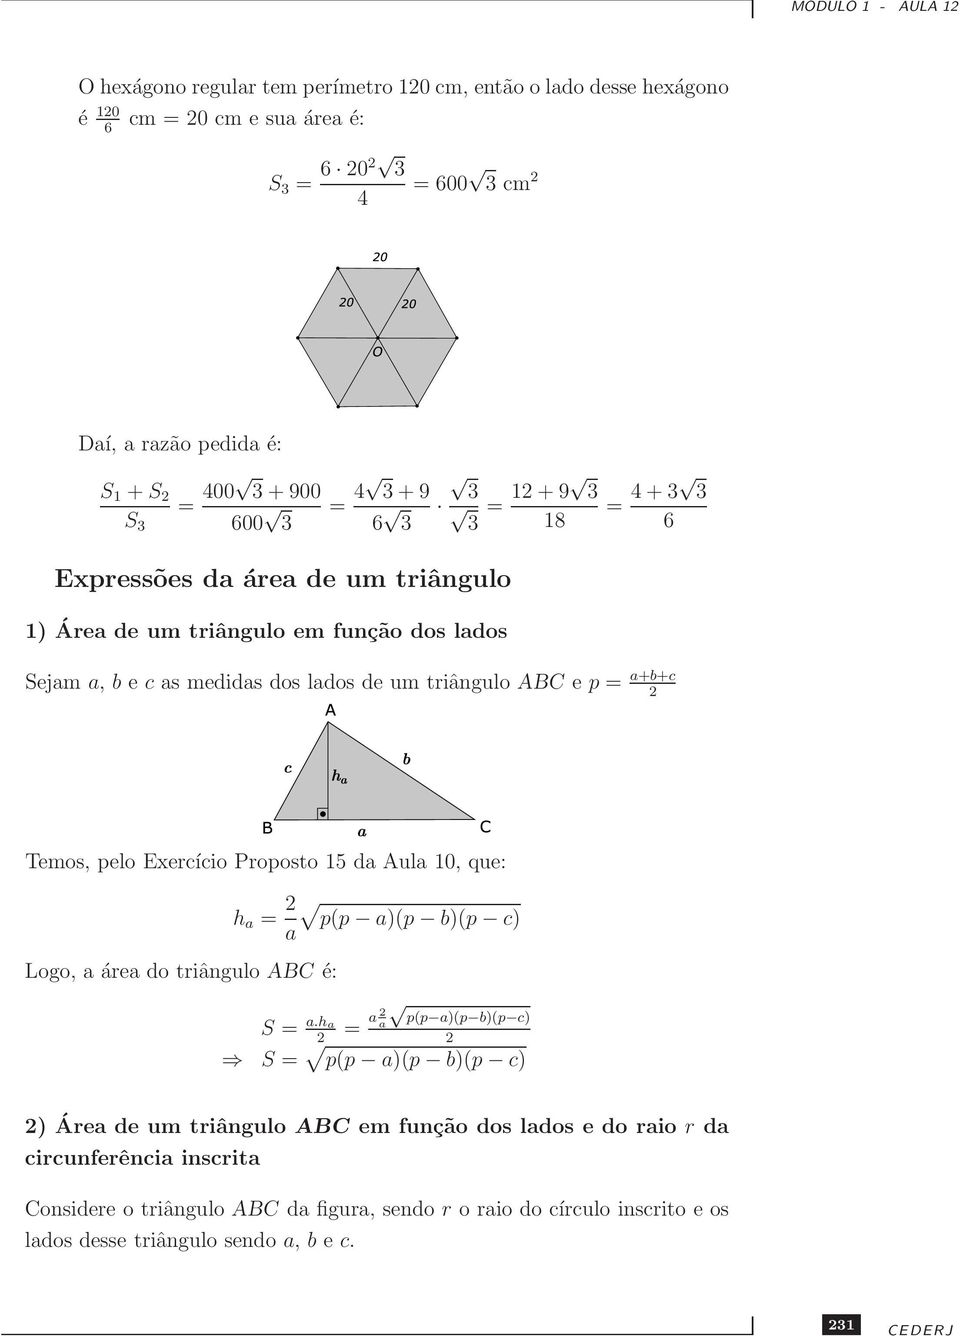 a+b+c Temos, pelo Exercício Proposto 15 da Aula 10, que: Logo, a área do triângulo ABC é: h a = a p(p a)(p b)(p c) p(p a)(p b)(p c) S = a.